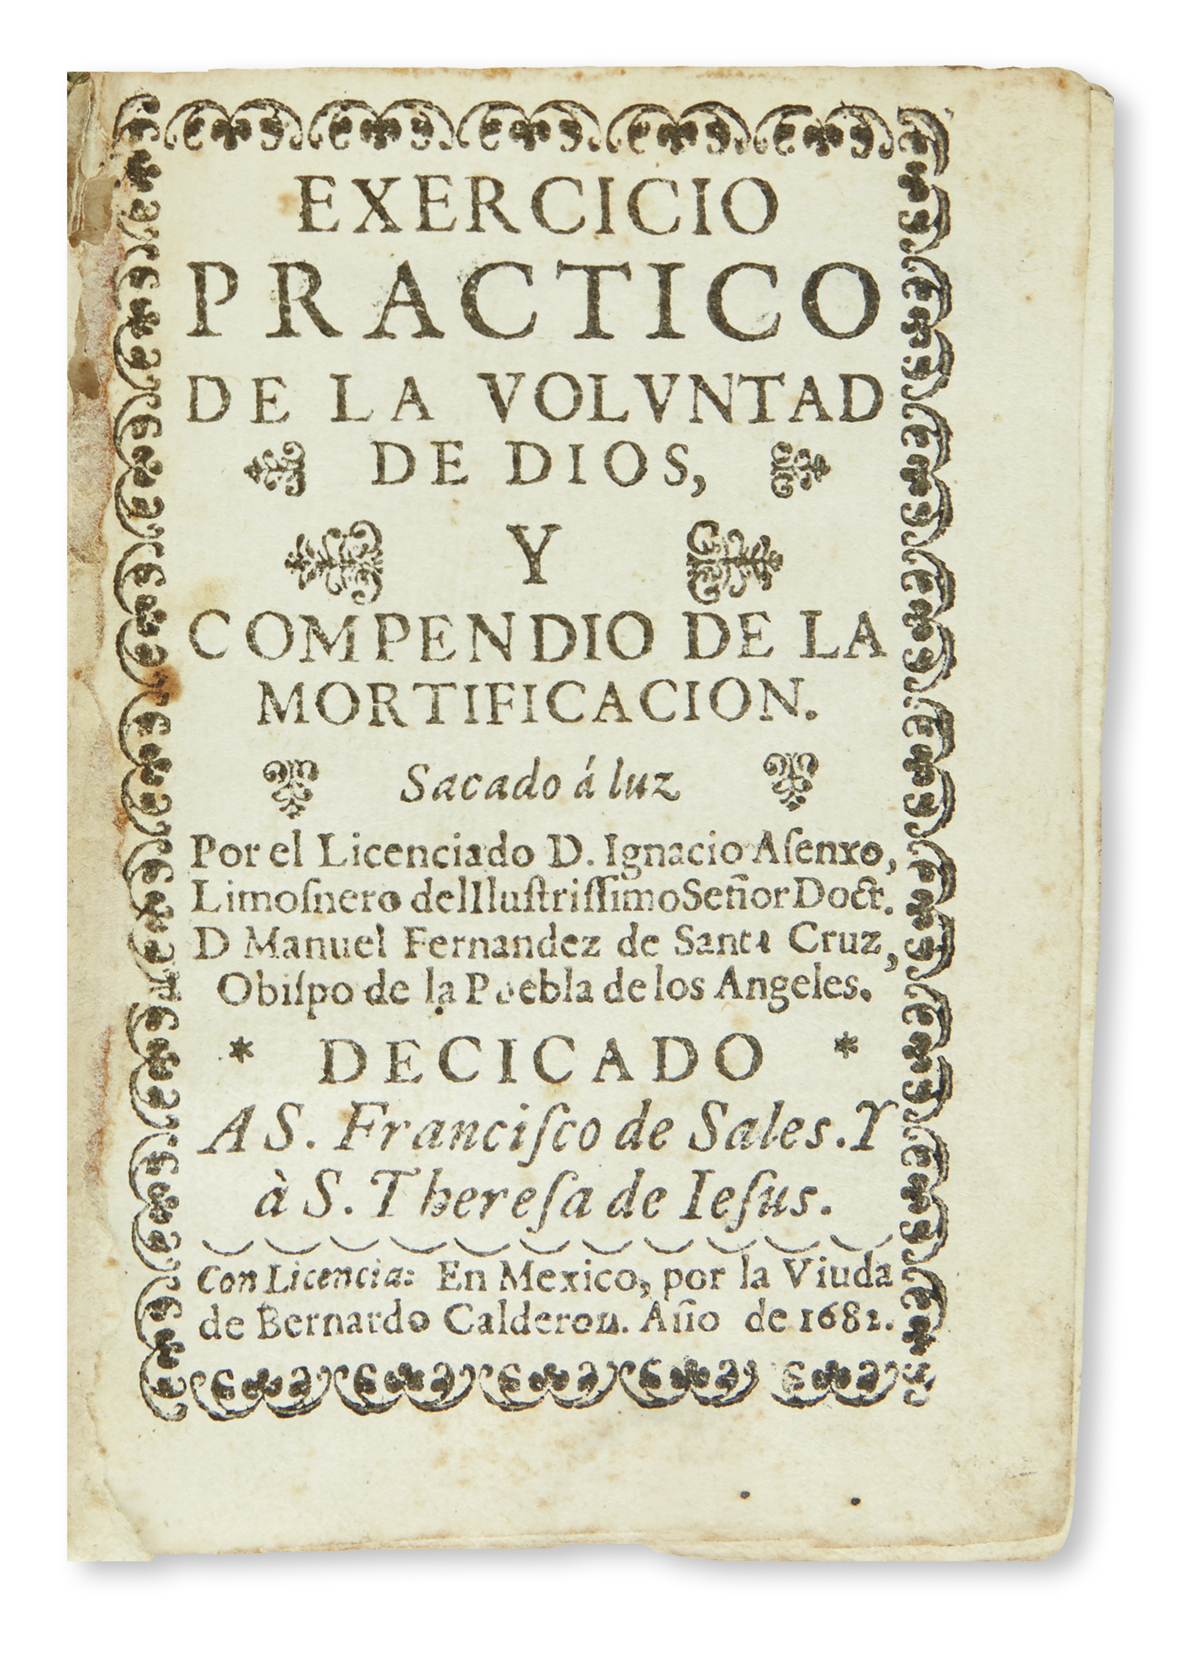 (MEXICAN IMPRINT--1682.) Asenjo y Crespo, Ignacio de. Exercicio practico de la voluntad de Dios, y compendio de la mortificacion.